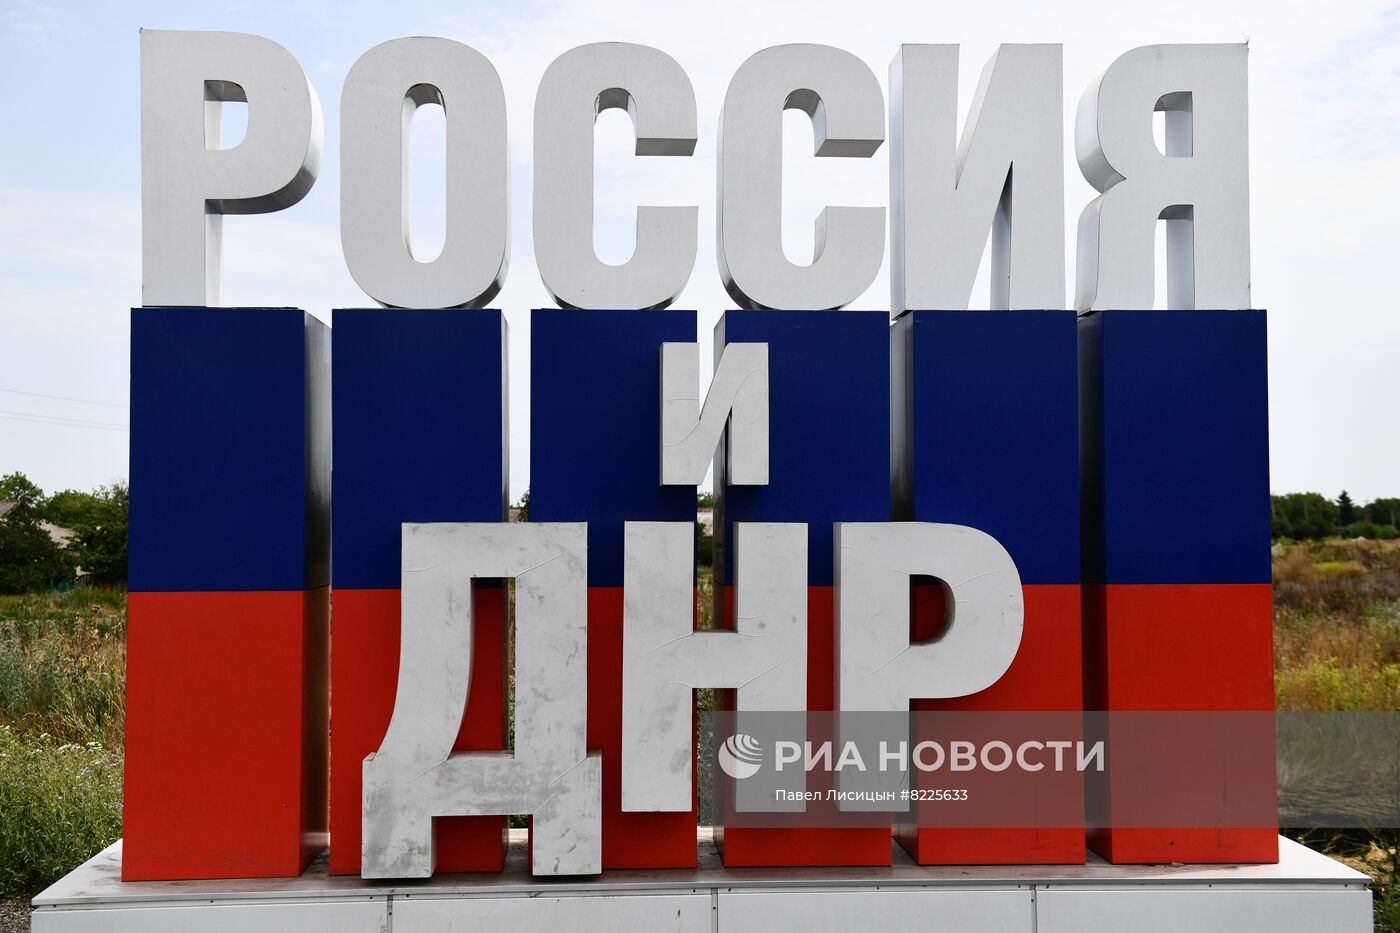 Стела "Россия и ДНР" открылась в Донецкой области